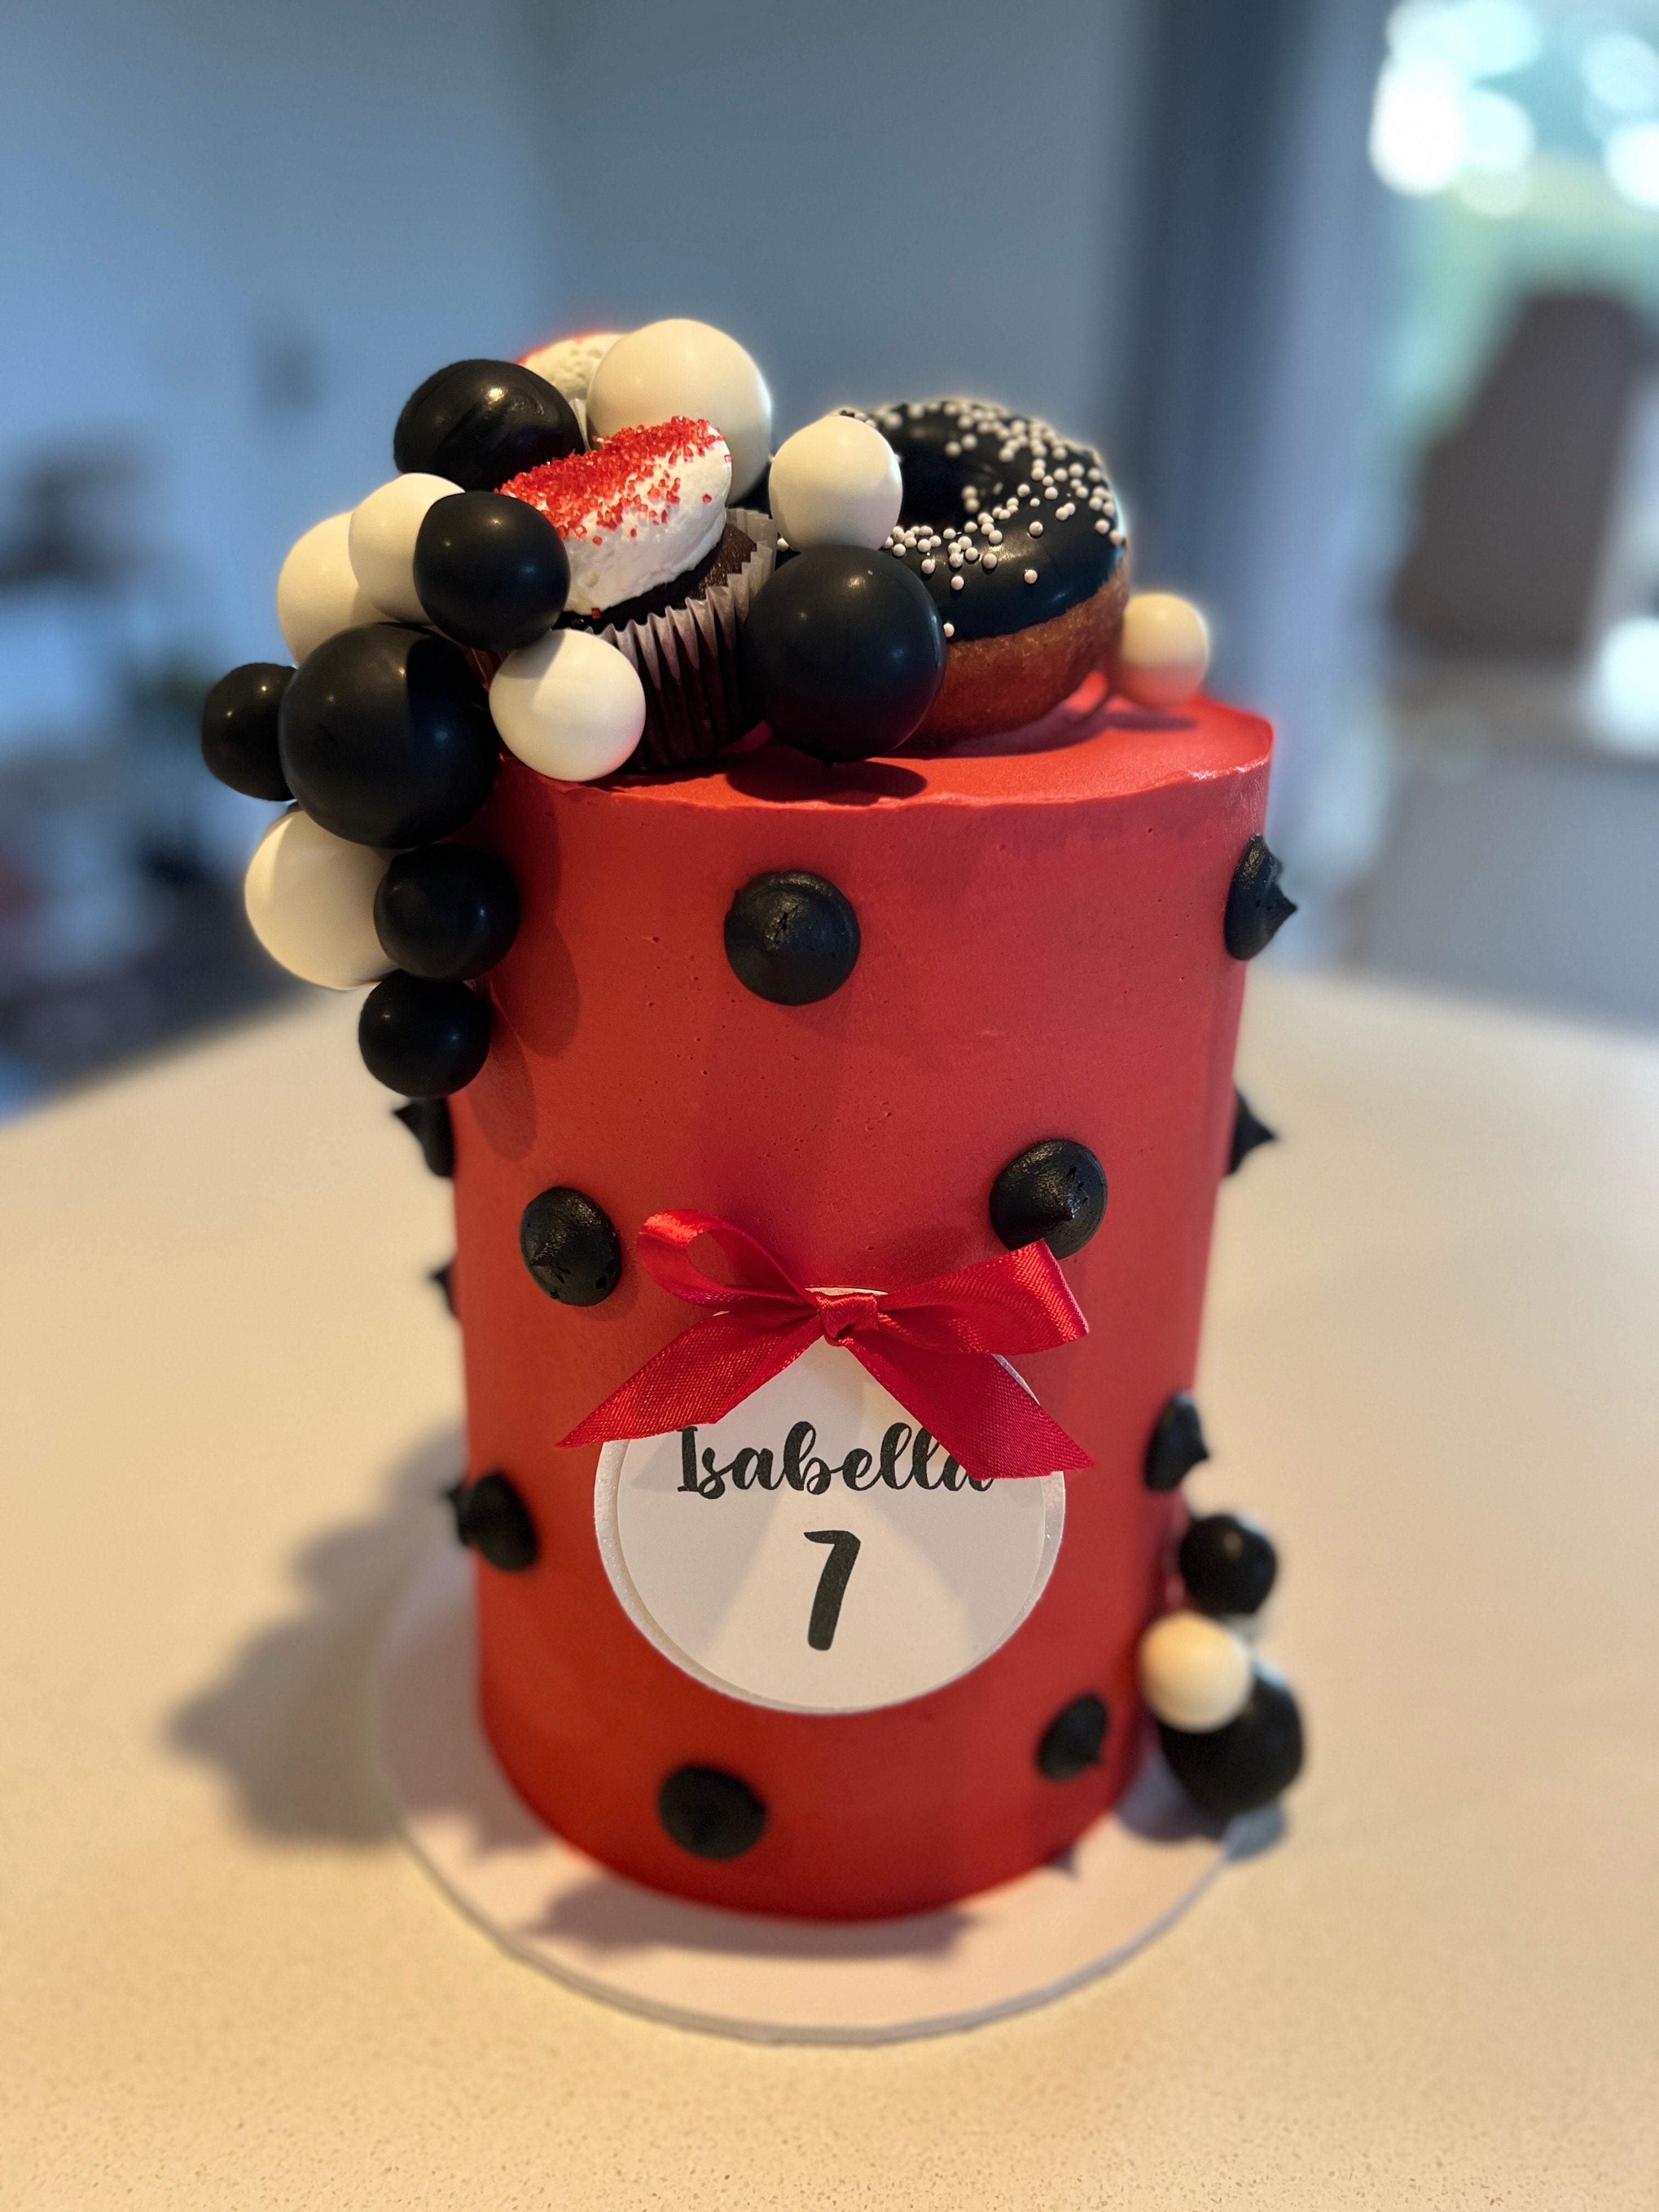 Miraculous Ladybug birthday cake 🐞 - Decorated Cake by My - CakesDecor